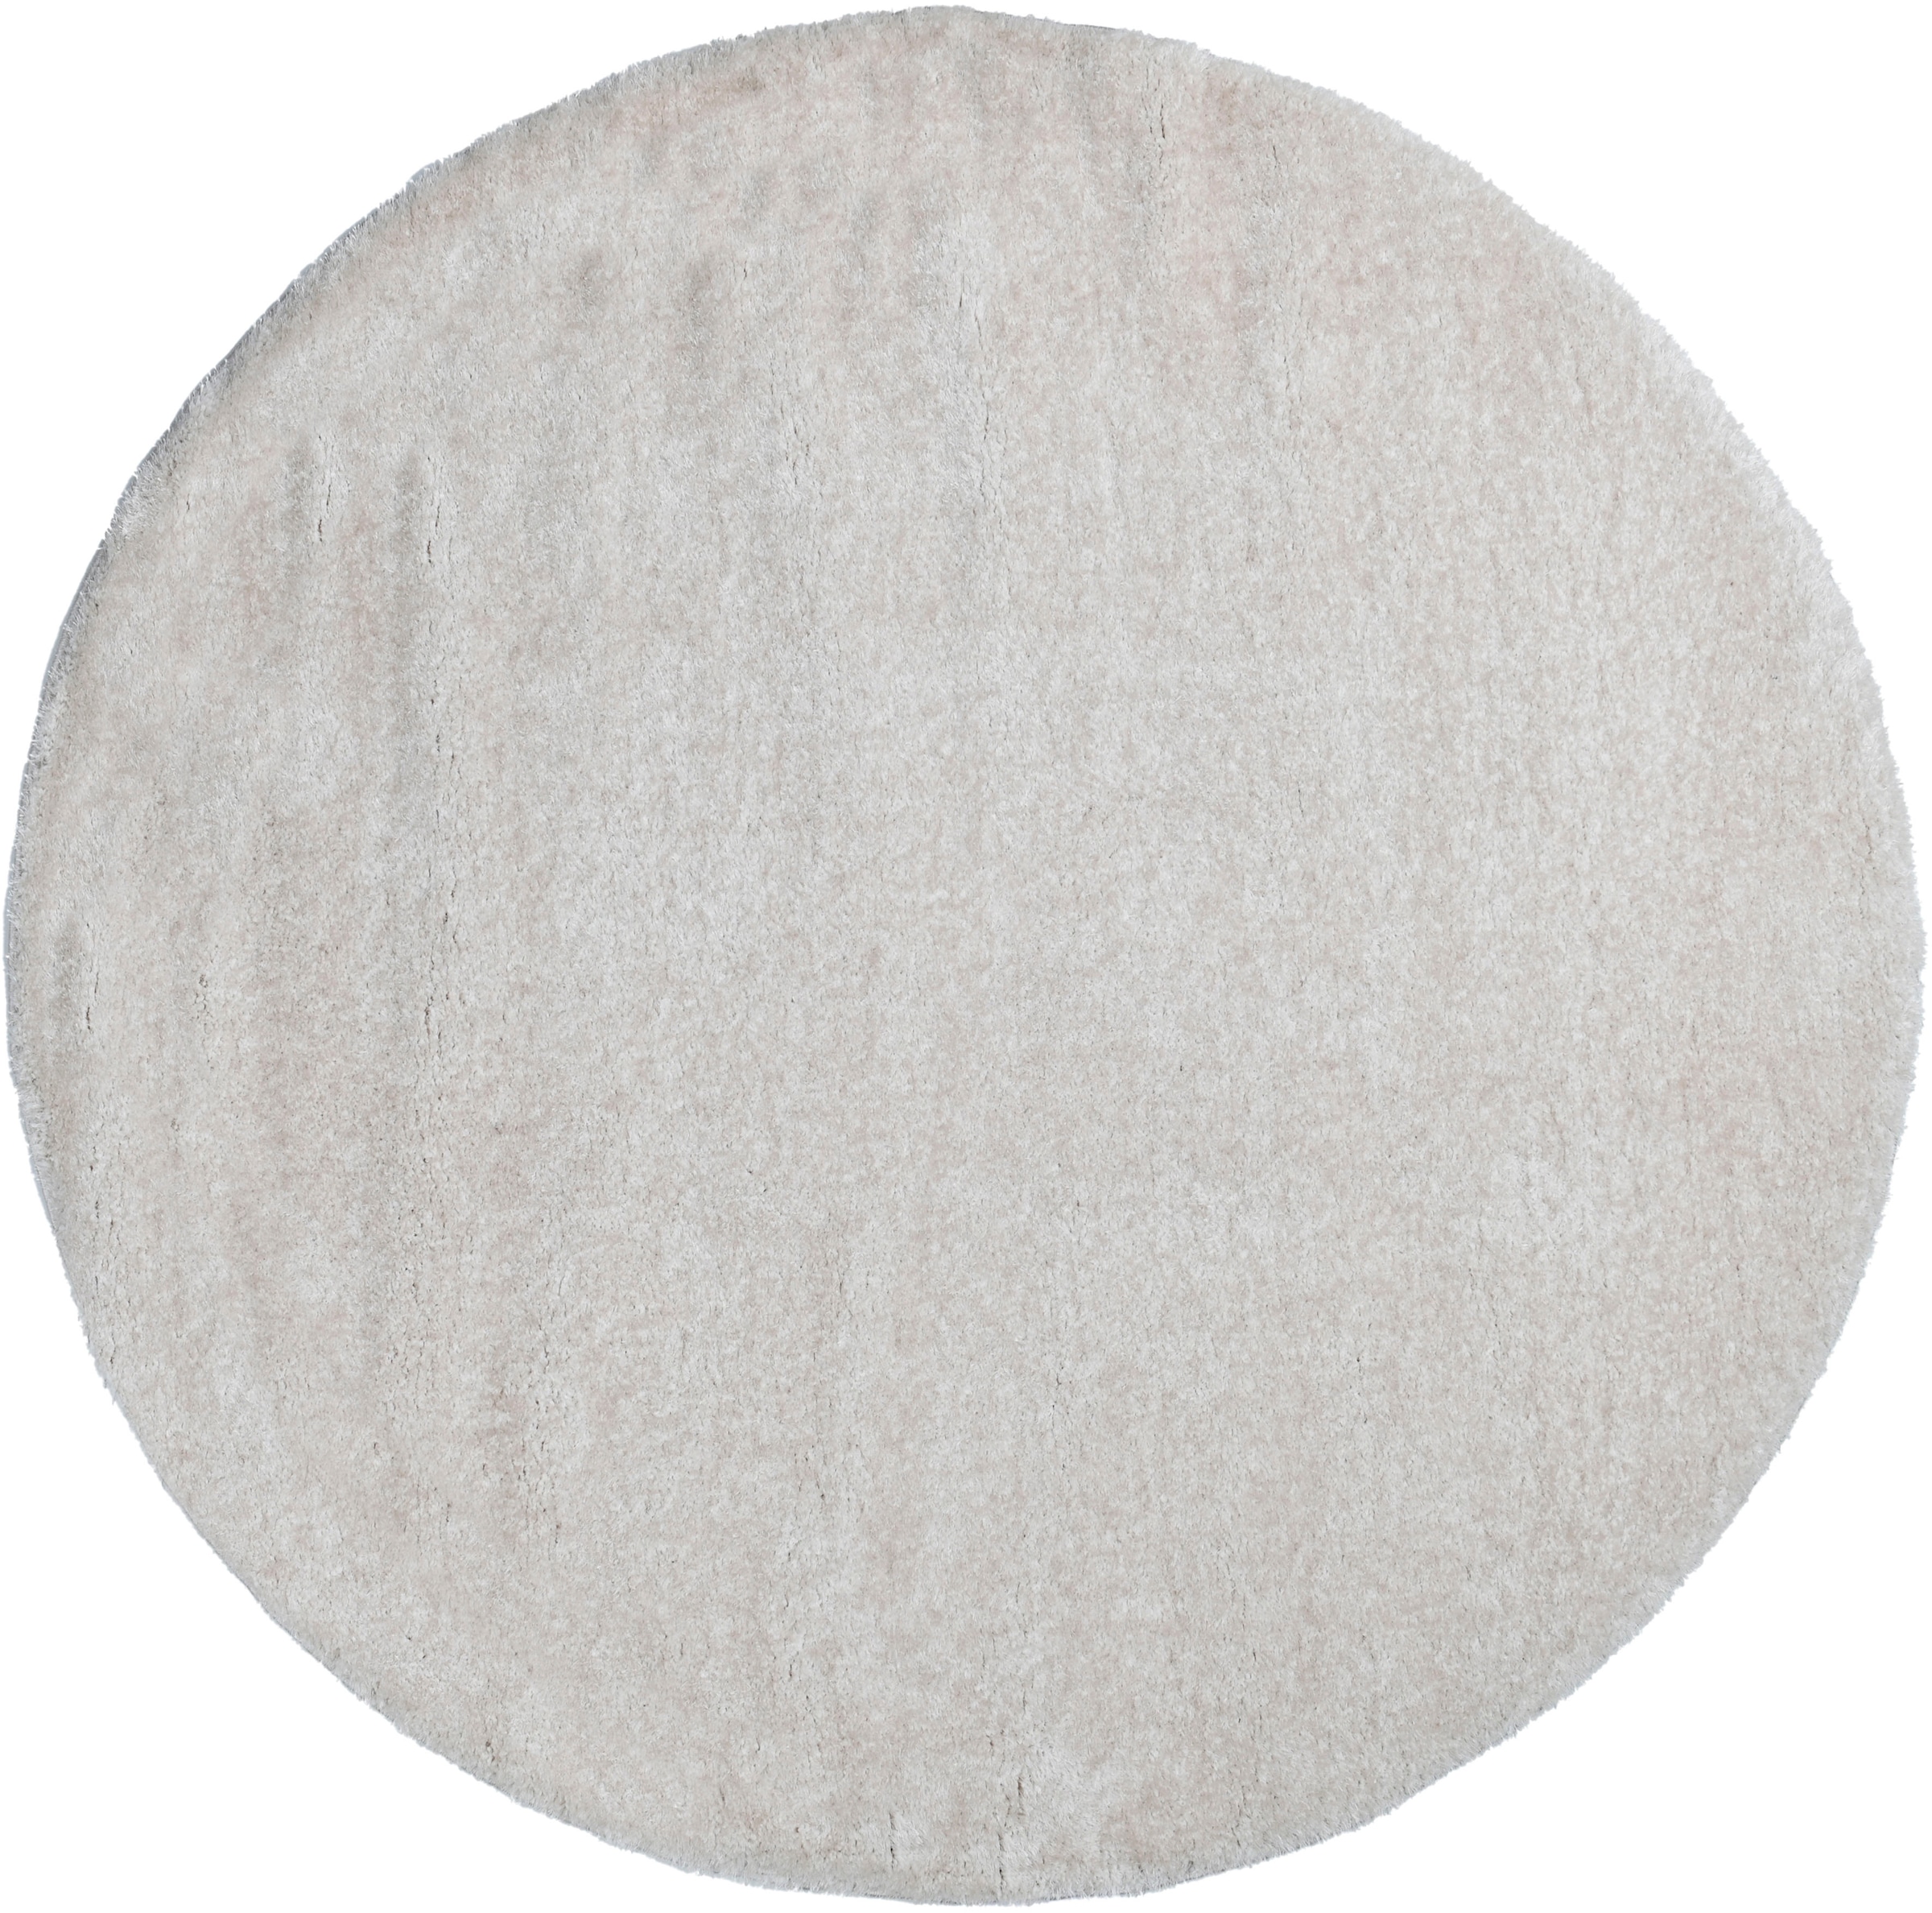 Hochflor-Teppich »Malin«, rund, Uni-Farben, leicht glänzend, besonders flauschig durch...